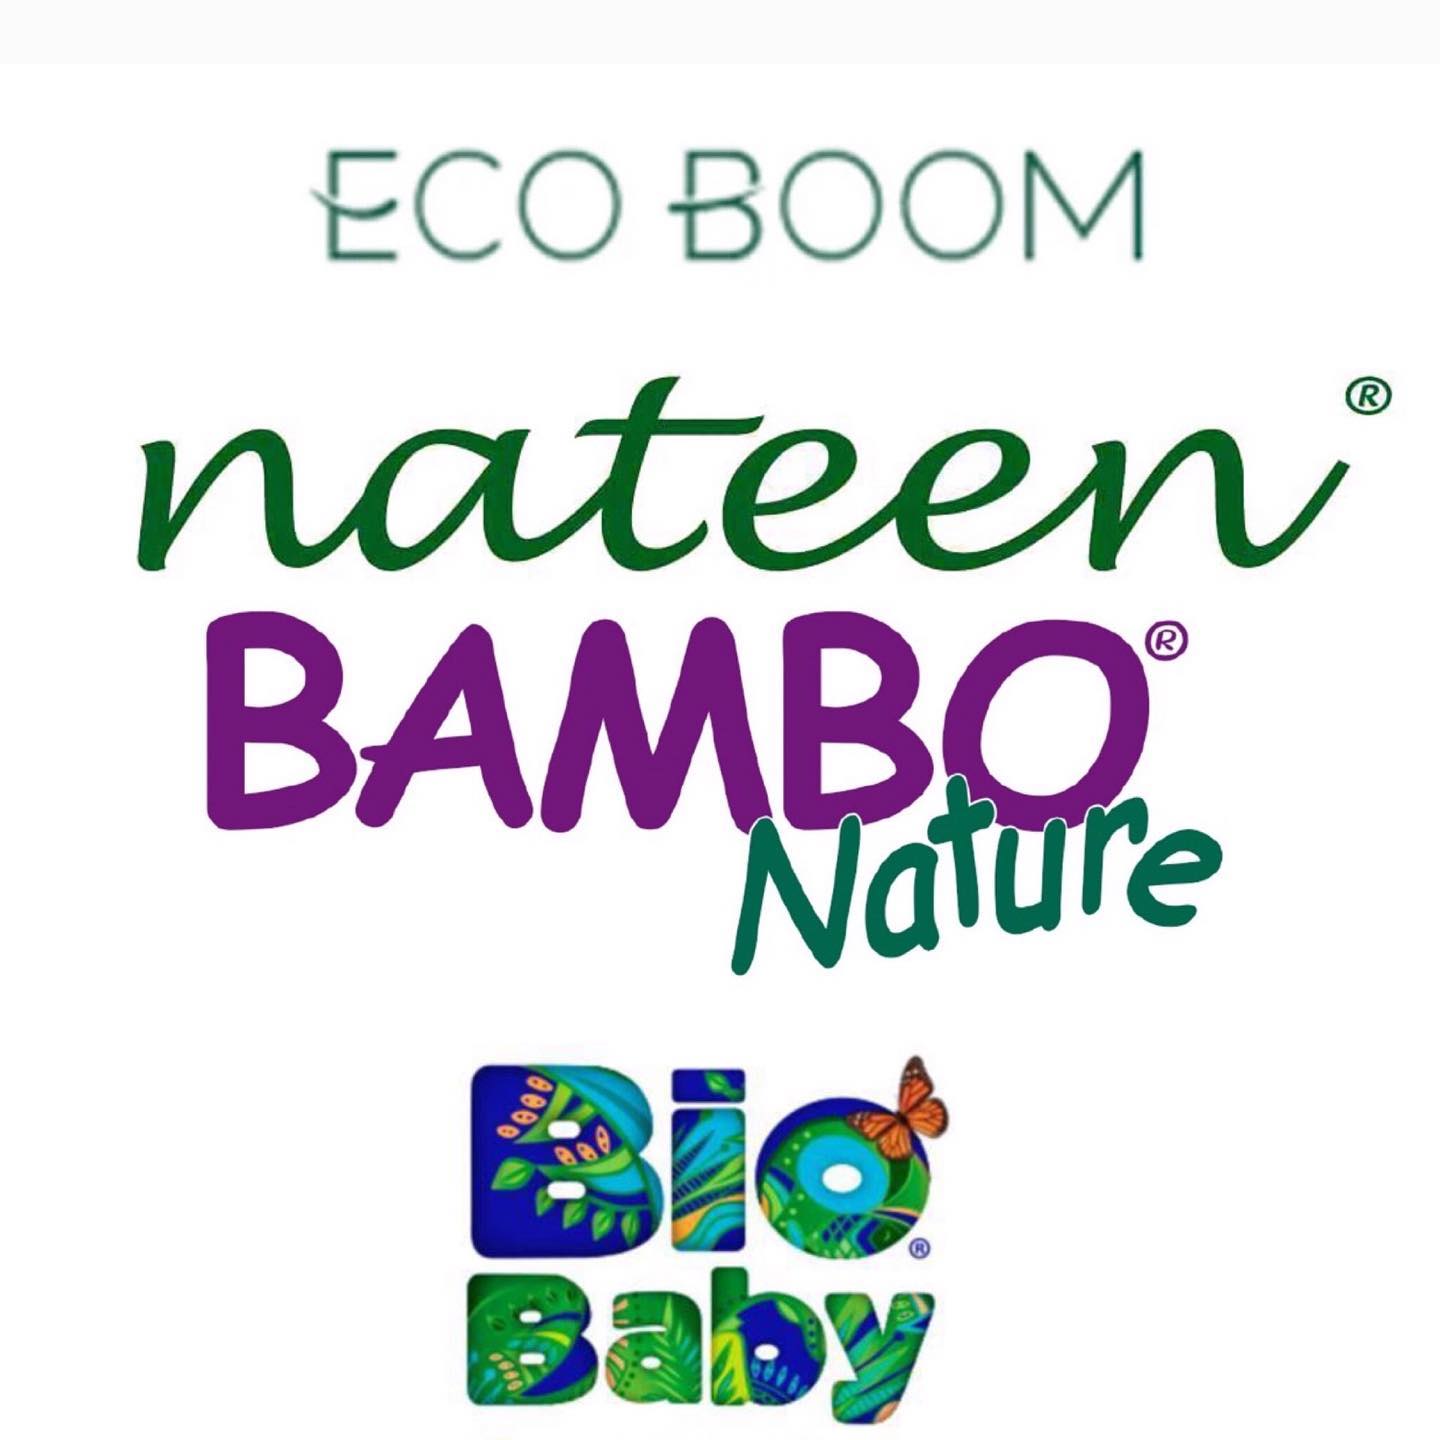 Sabias que en chile ya son al rededor de 5 marcas de pañales amigables con el medio ambiente? Que quiere decir amigables con el medio ambiente? Puede ser por distintos motivos como que en su fabricación tengan manejo de residuos responsable, o que en su contenido tengan más porcentaje de celulosa que plástico o que sean compostables. Somos parte del cambio y lo que elegimos importa, la relación con nuestro entorno, con nuestro consumo es fundamental. 
ECO BOOM, Nateen, BAMBO Nature y Biobaby marcas disponibles en www.biopañales.cl 
Despacho a domicilio de lunes a viernes 🚗